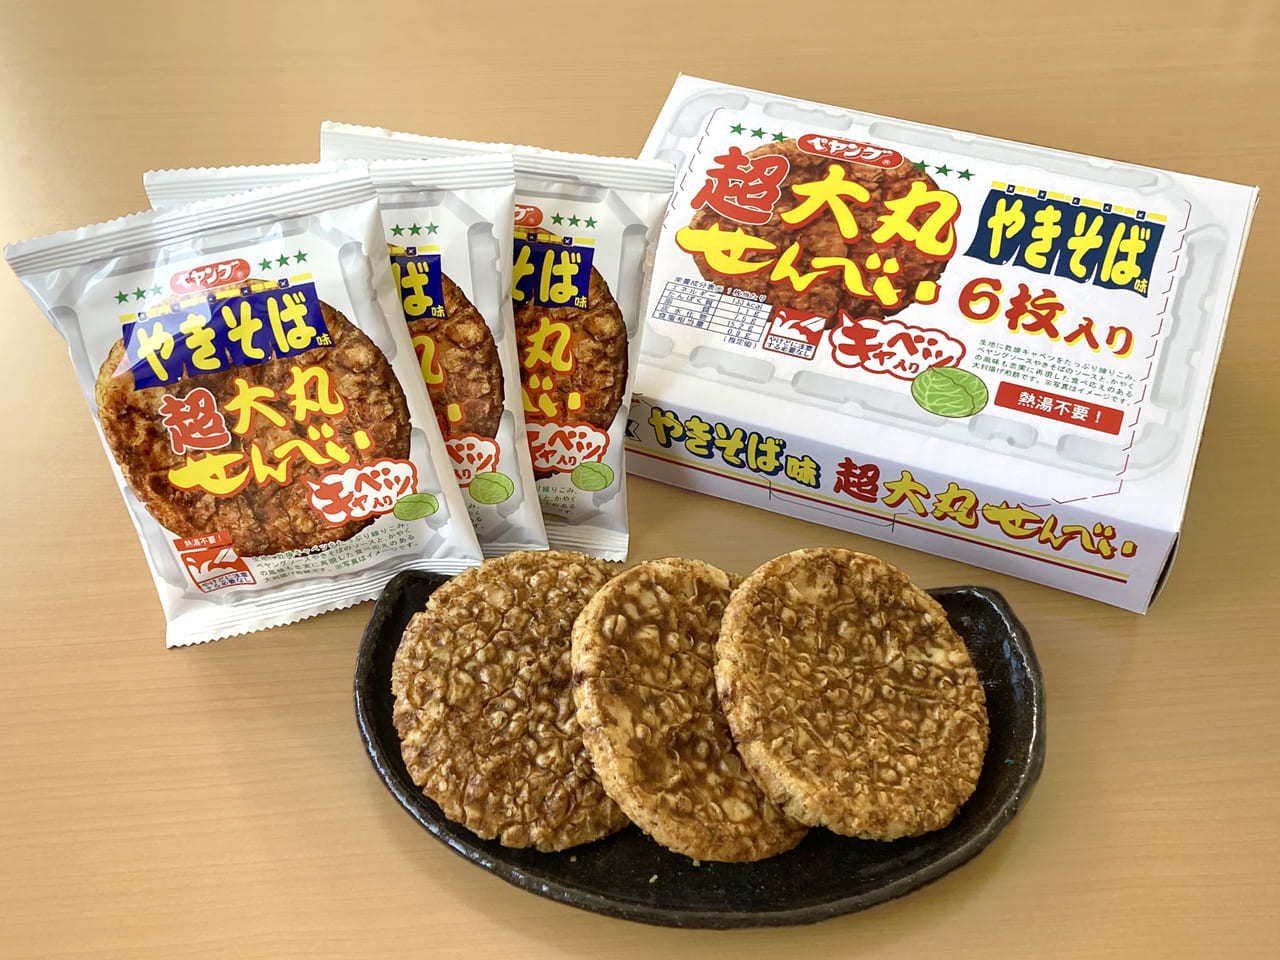 「ペヤングソースやきそば味超大丸せんべい6枚入BOX」が発売、まるか食品と三州製菓の新商品